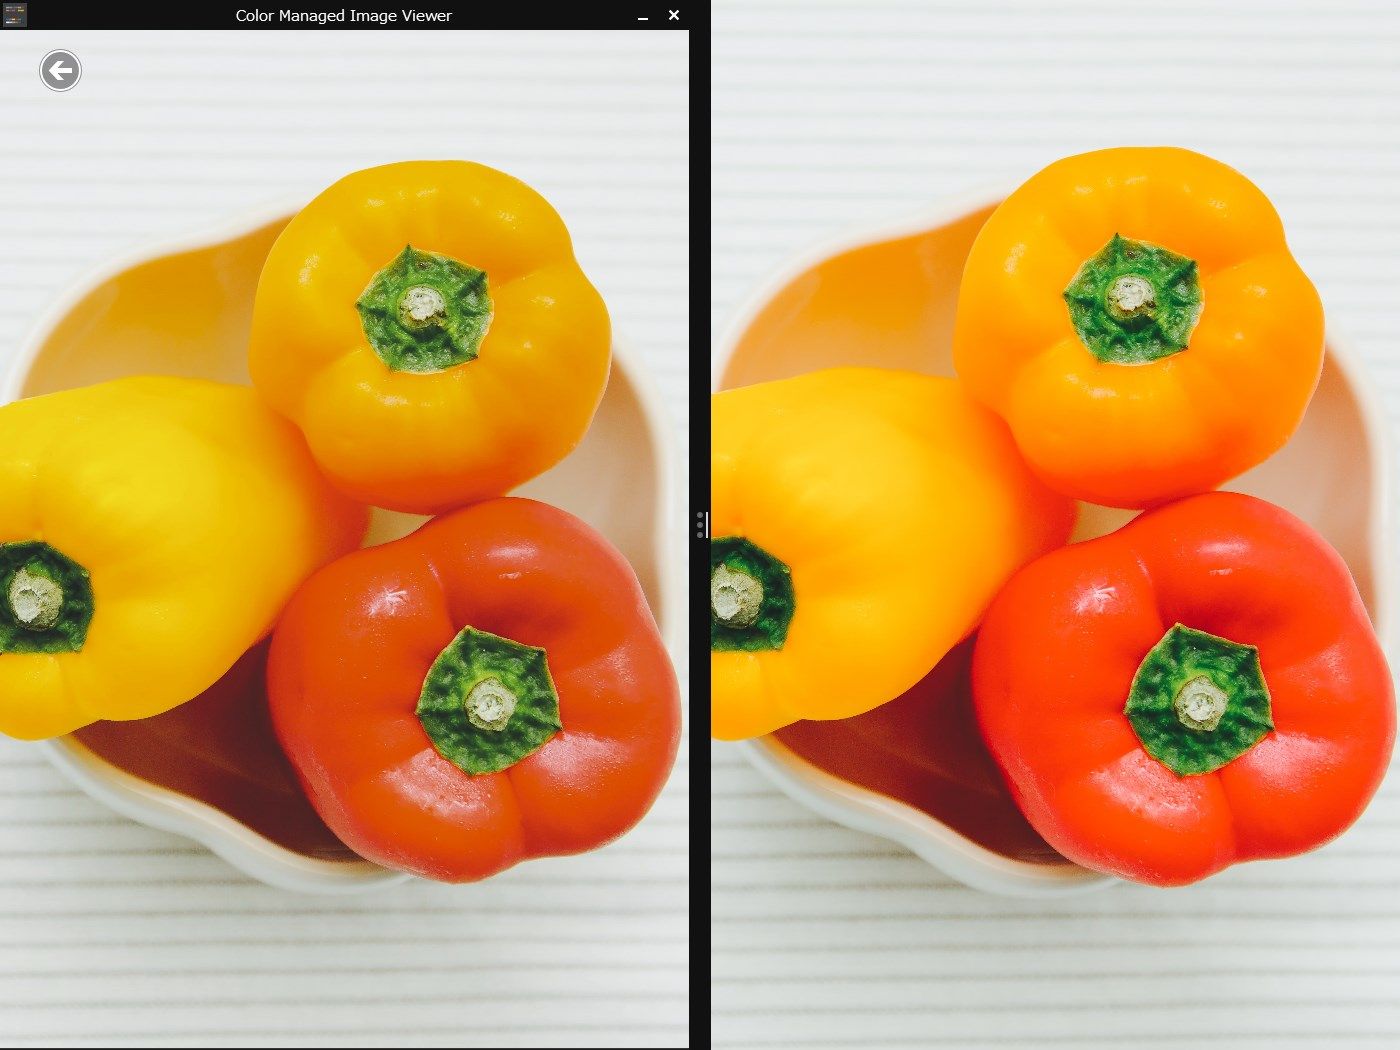 広色域ディスプレイでも適切な色で表示できます(左)。カラーマネジメント非対応アプリ(右)では彩度が本来より高く表示されてしまいます。